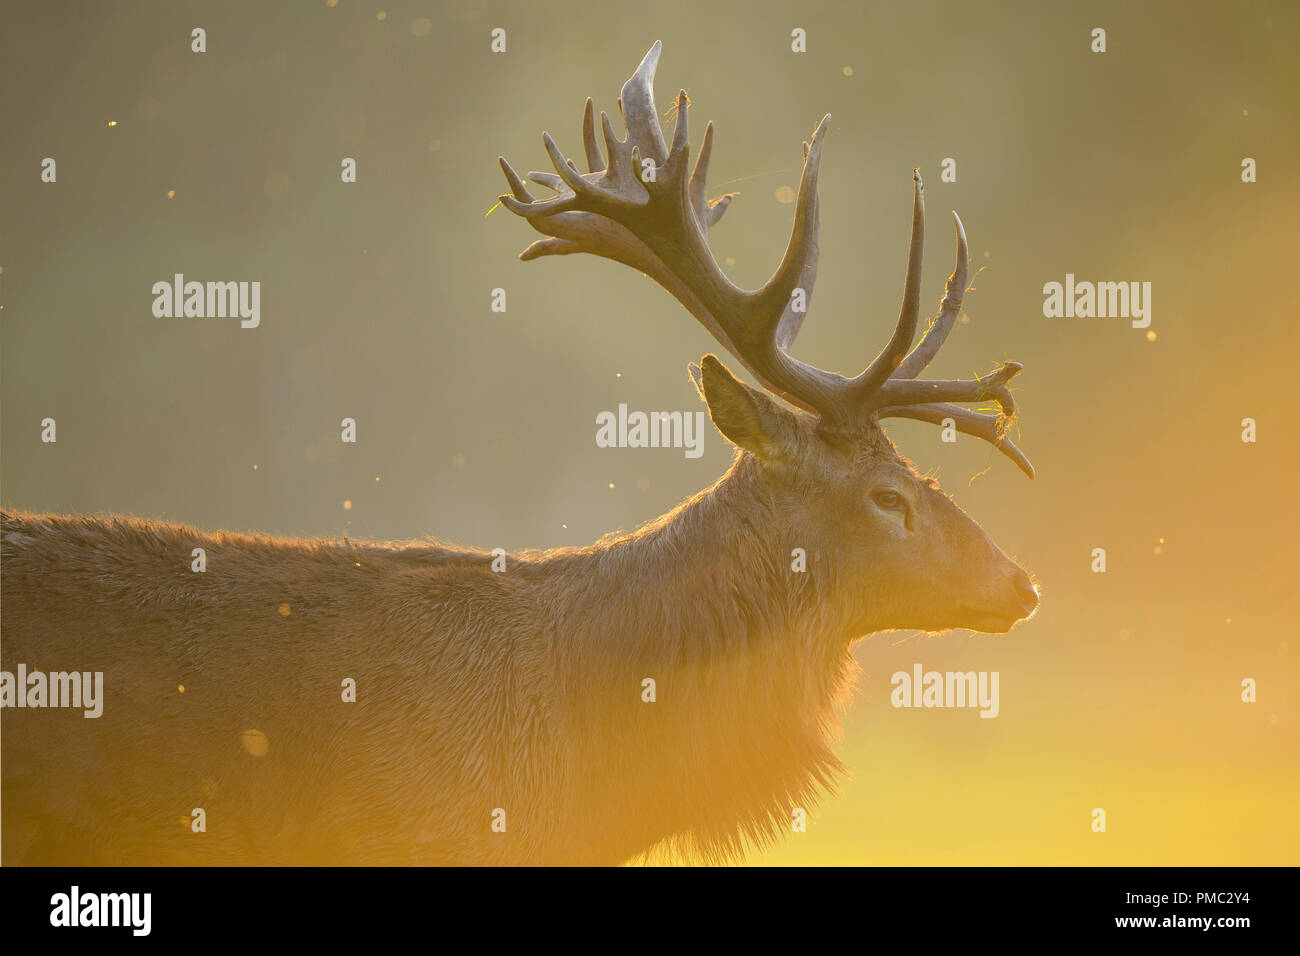 Red deer, Cervus elaphus, Male, in Rutting Season, Europe Stock Photo